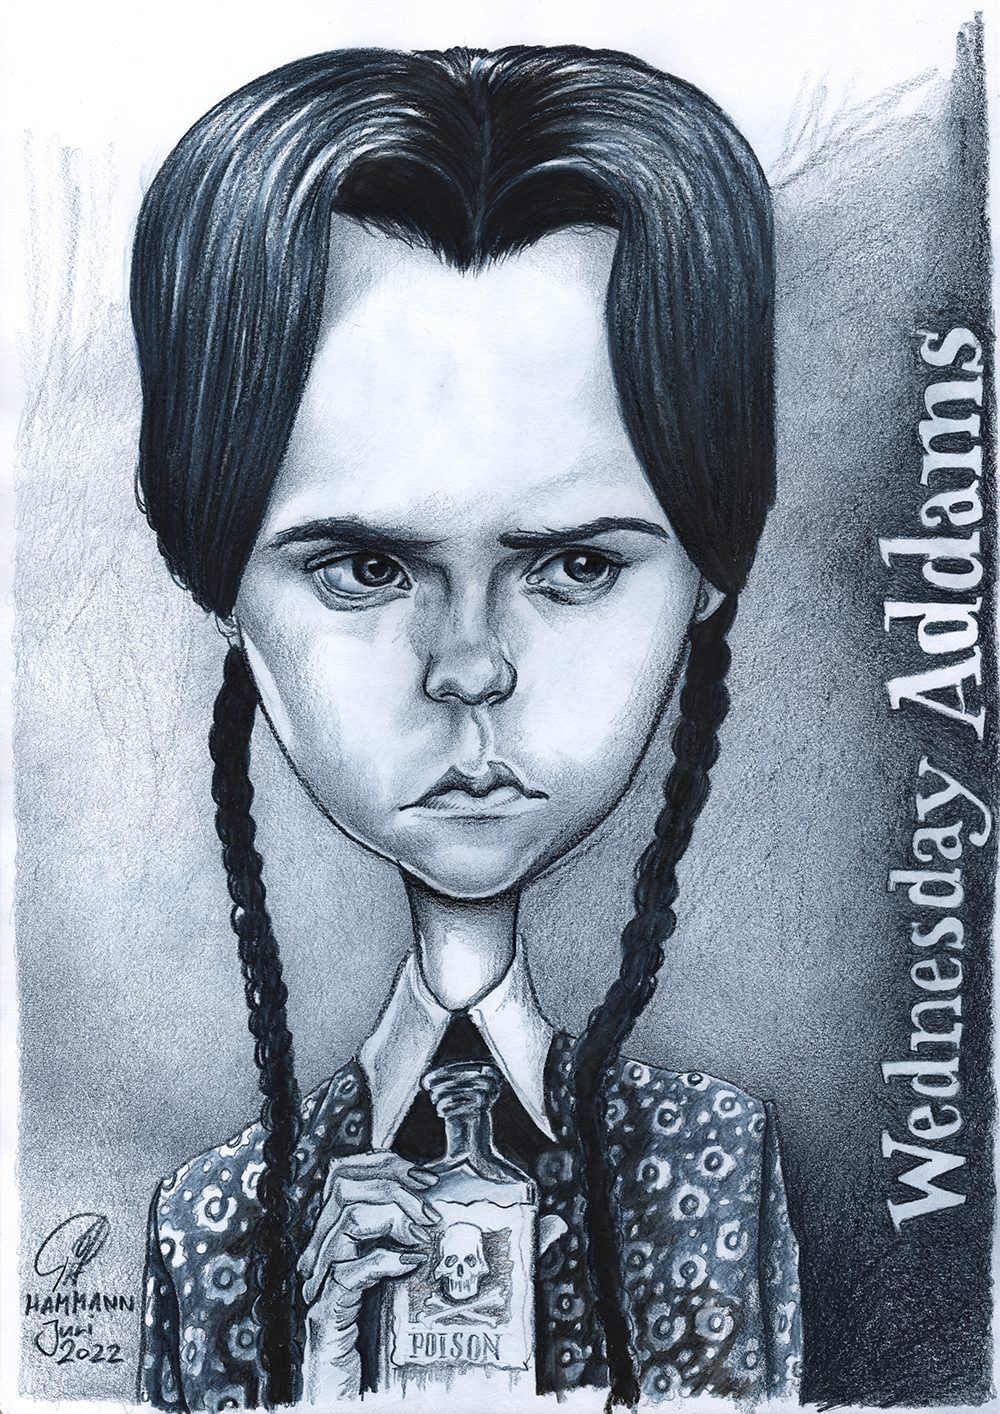 Buntstift-Zeichnung von Wednesday Addams/ballpen drawing of Wednesday Addams